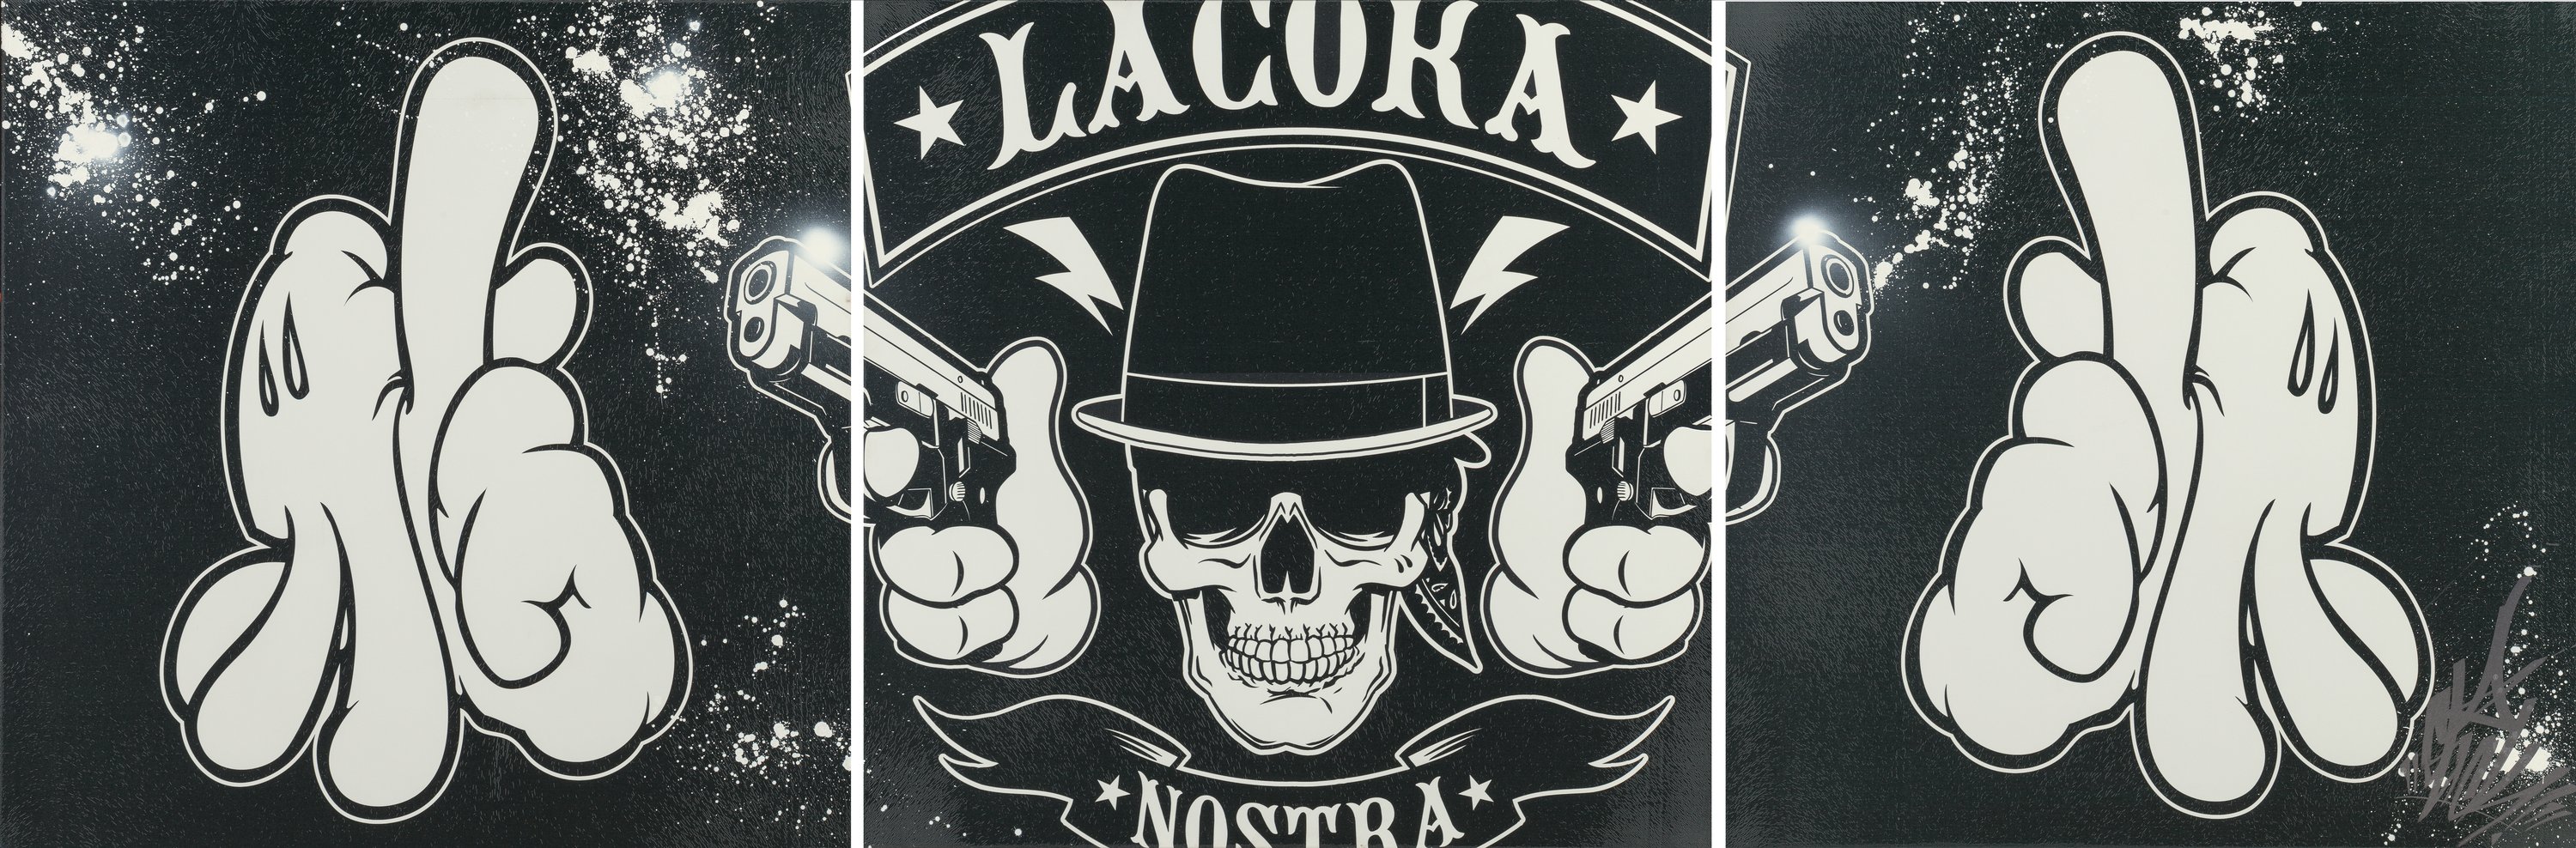 La Coka Nostra, Triptych